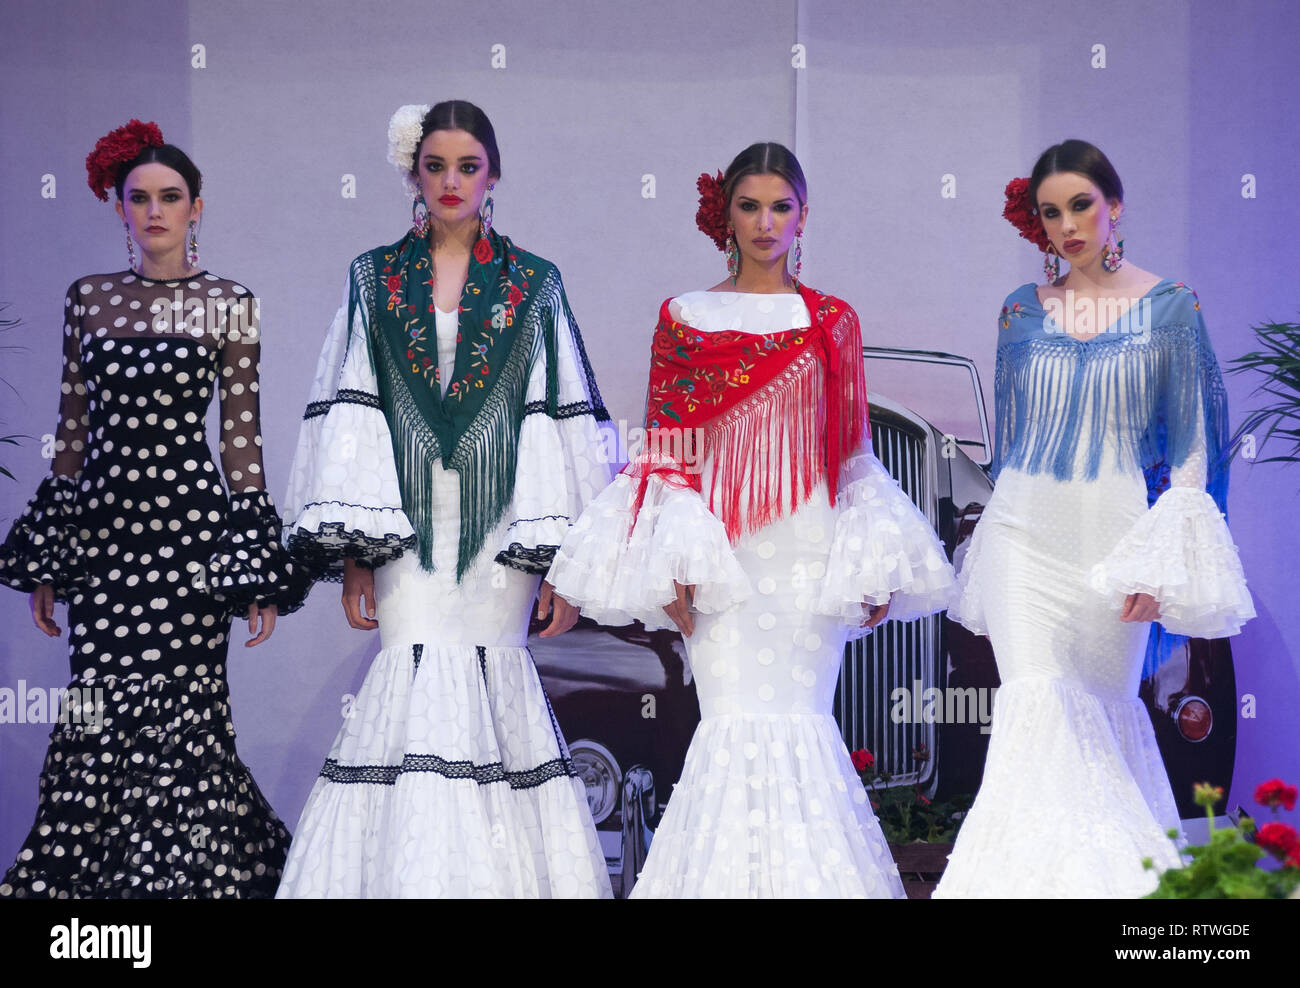 Málaga, Málaga, España. 2 Mar, 2019. Modelos vistos luciendo trajes de flamenca posando para los fotógrafos en la pasarela durante la IV Feria Internacional de la Moda Flamenca (FIMAF) en hotel